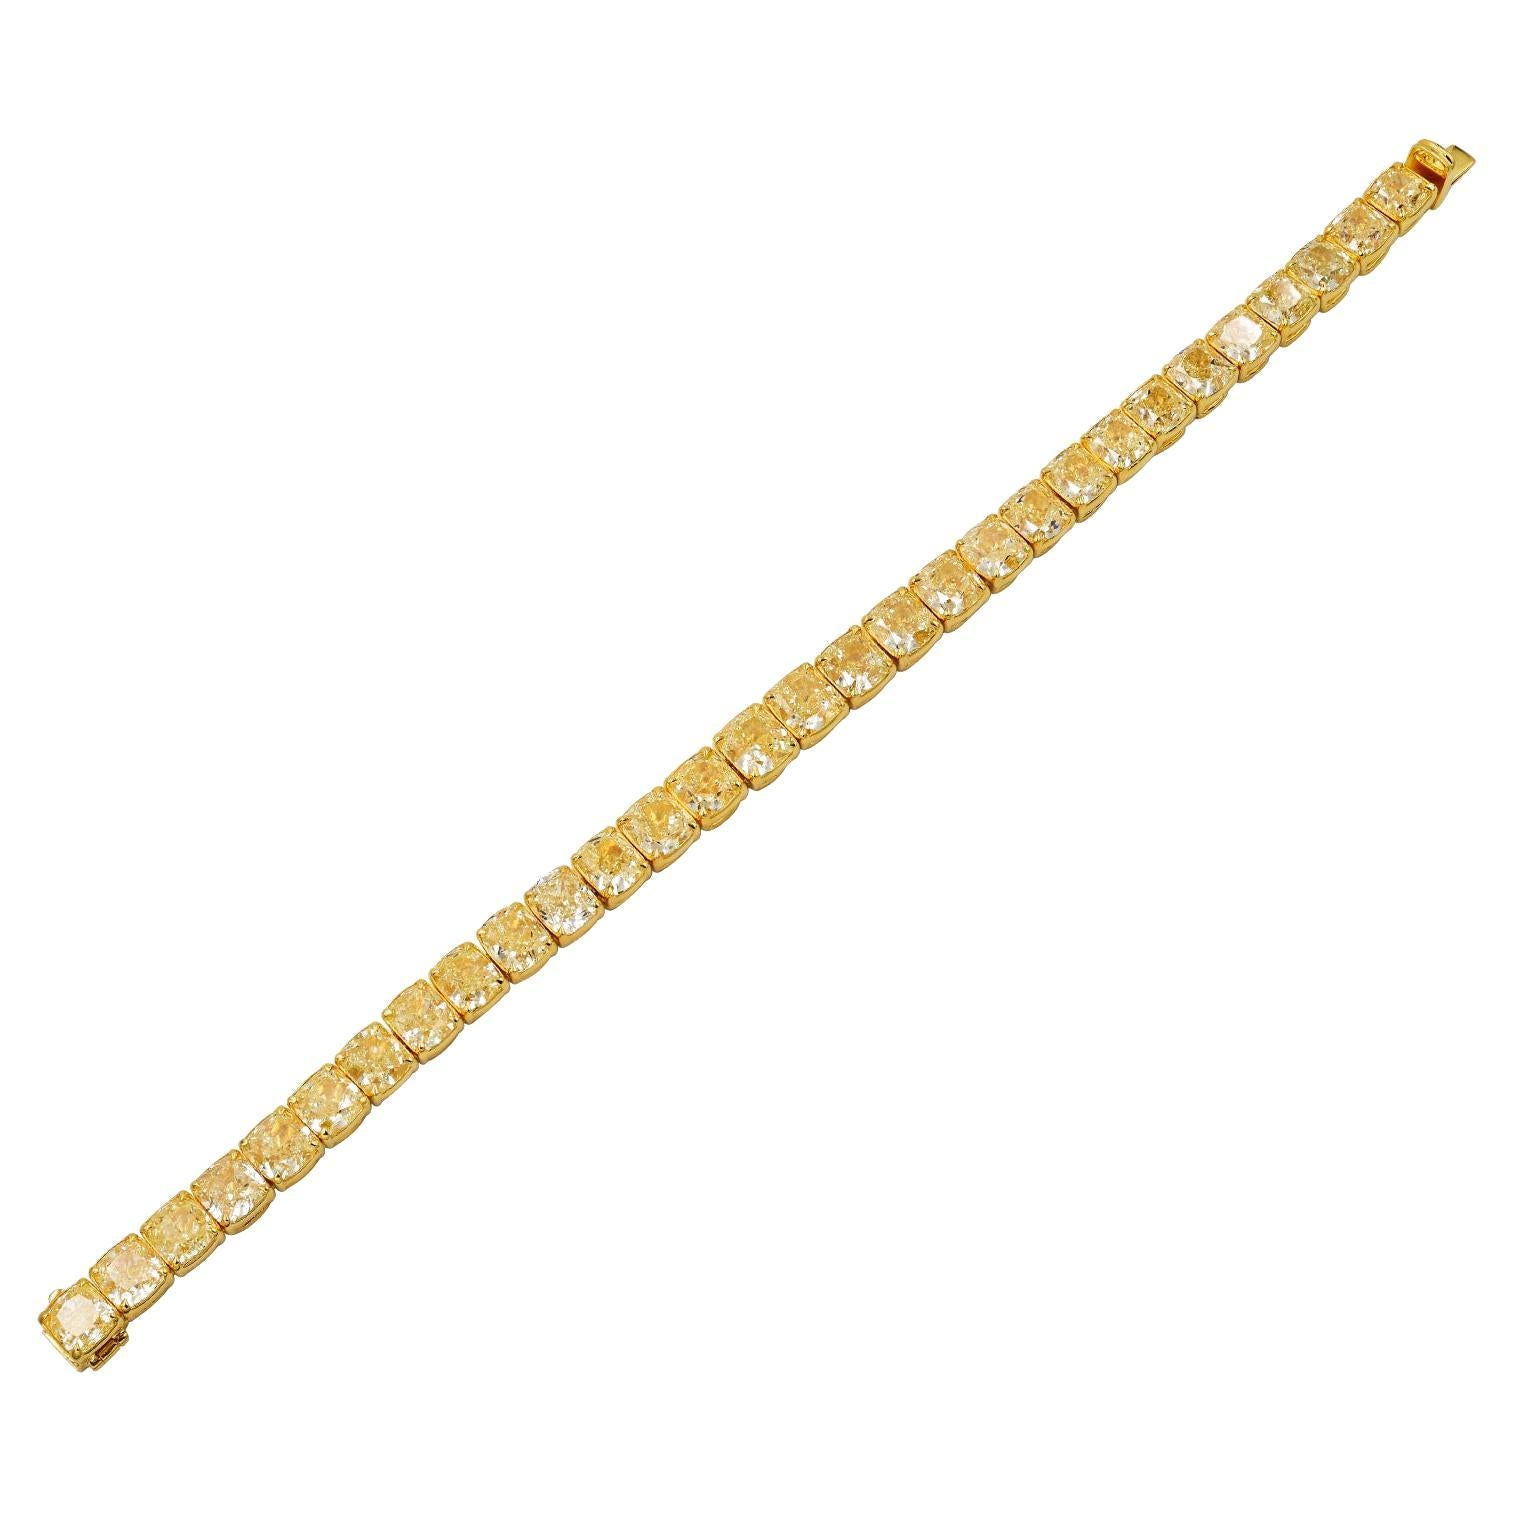 Spectra Fine Jewelry 32.83 Carat Yellow Diamond Bracelet